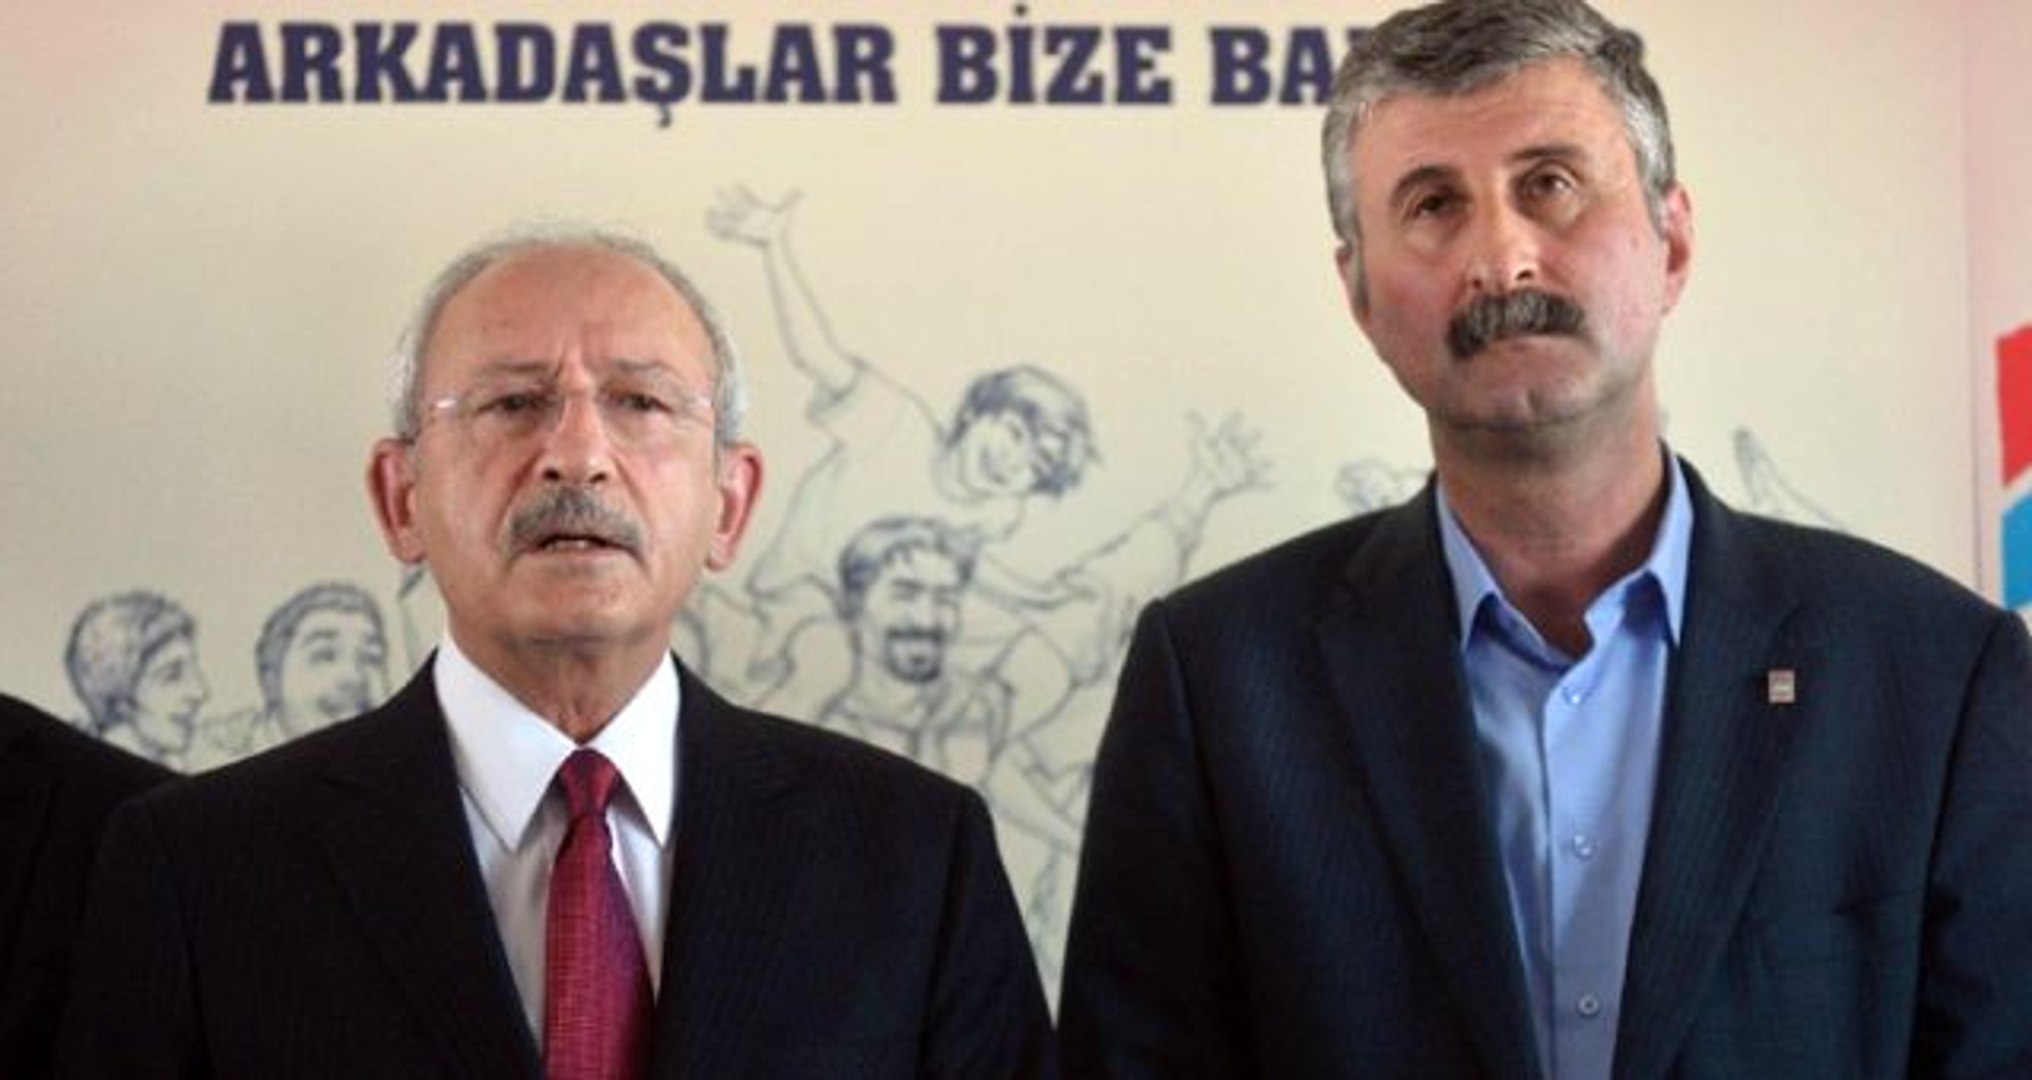 CHP'nin Beyoğlu adayı Alper Taş: Parti içerisinden Cuma namazına git  dediler - Dailymotion Video